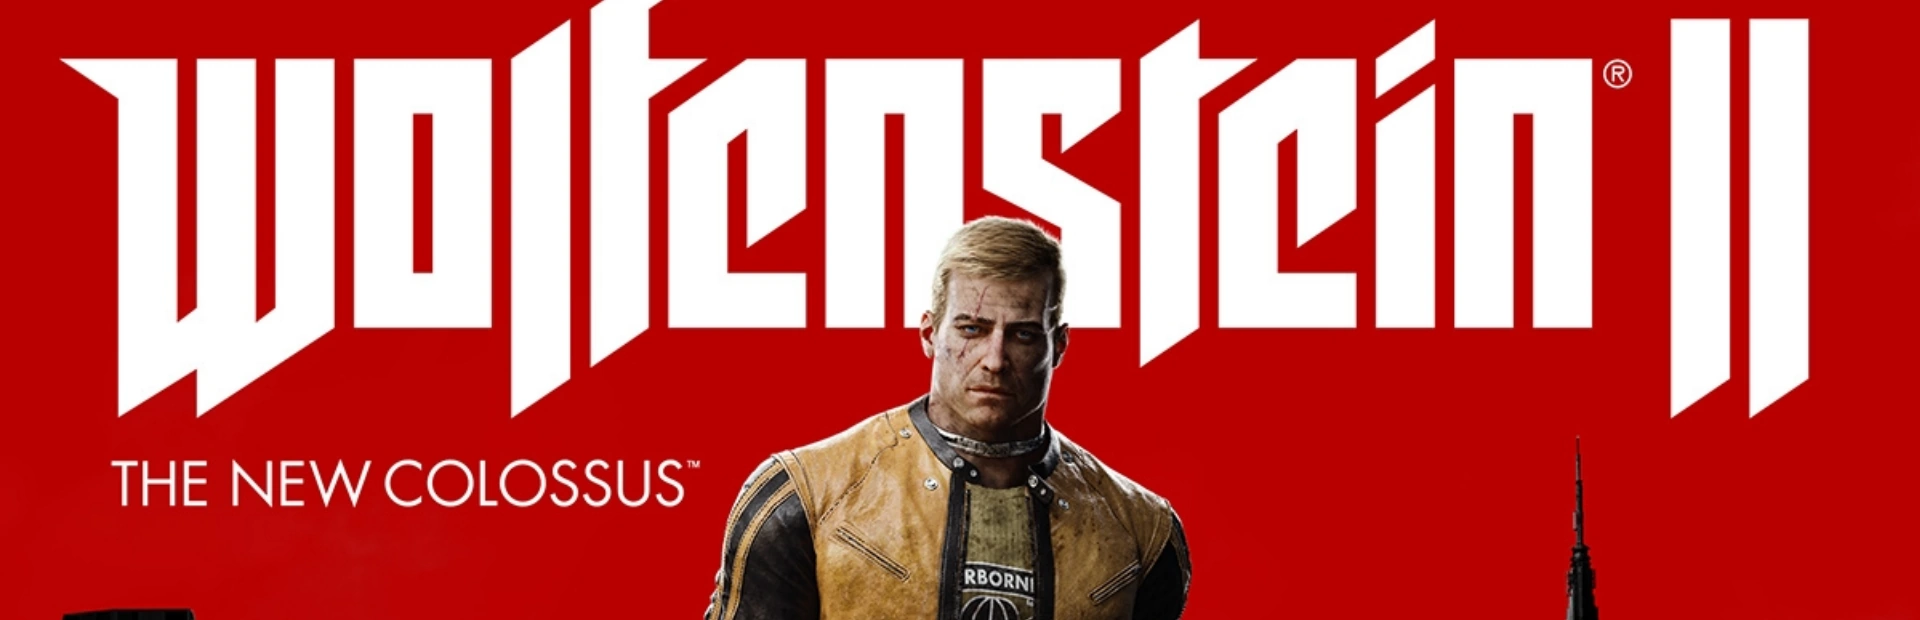 Wolfenstein.II .The .New .Colossus.banner1